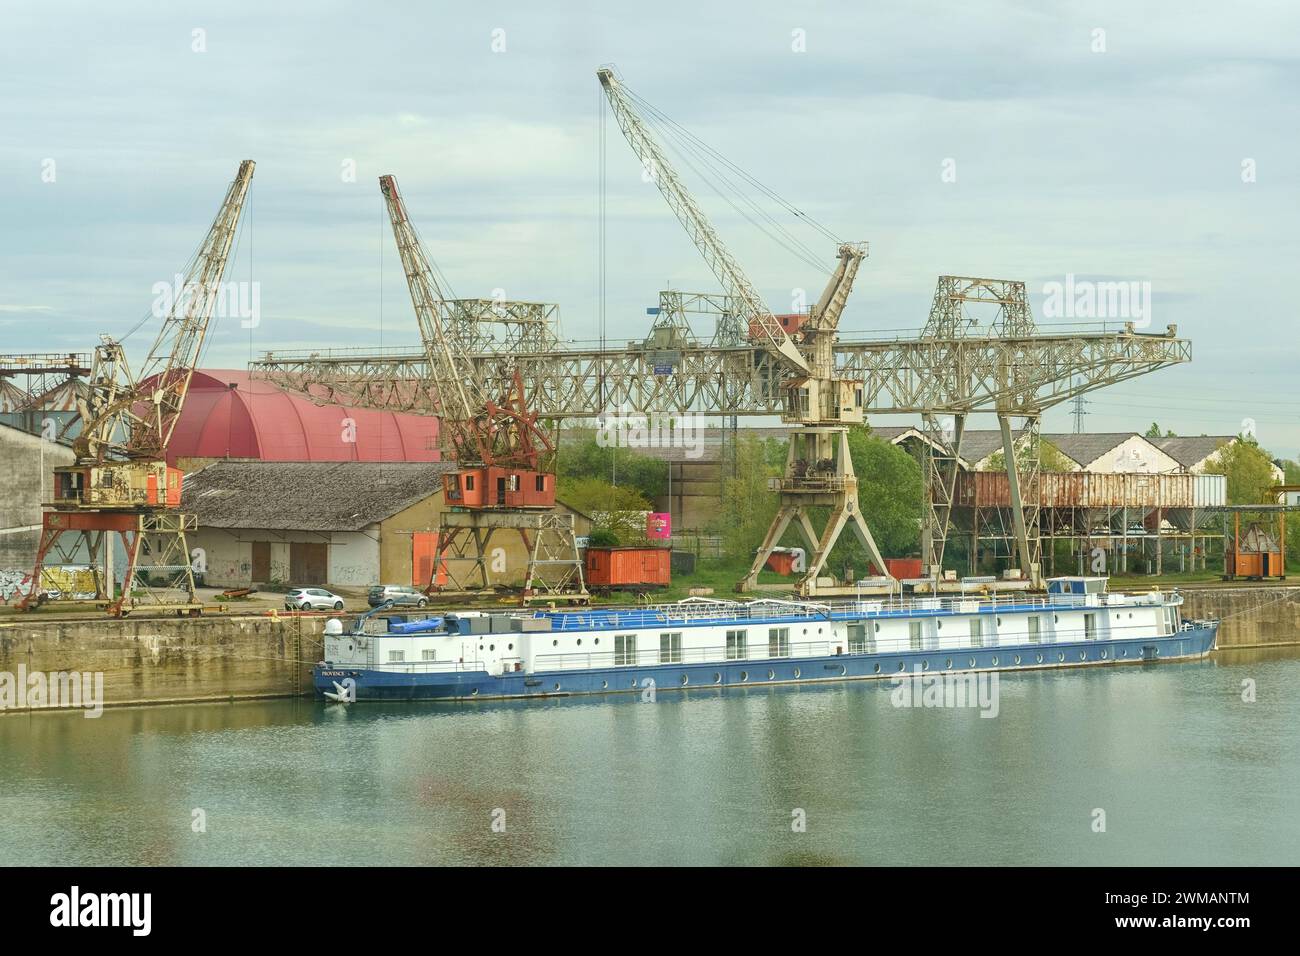 Saint-Marseille, France, 28 avril 2023 : une barge bleue flotte sur une rivière calme, amarrée dans un port industriel. Derrière elle, de grandes grues métalliques et wa Banque D'Images